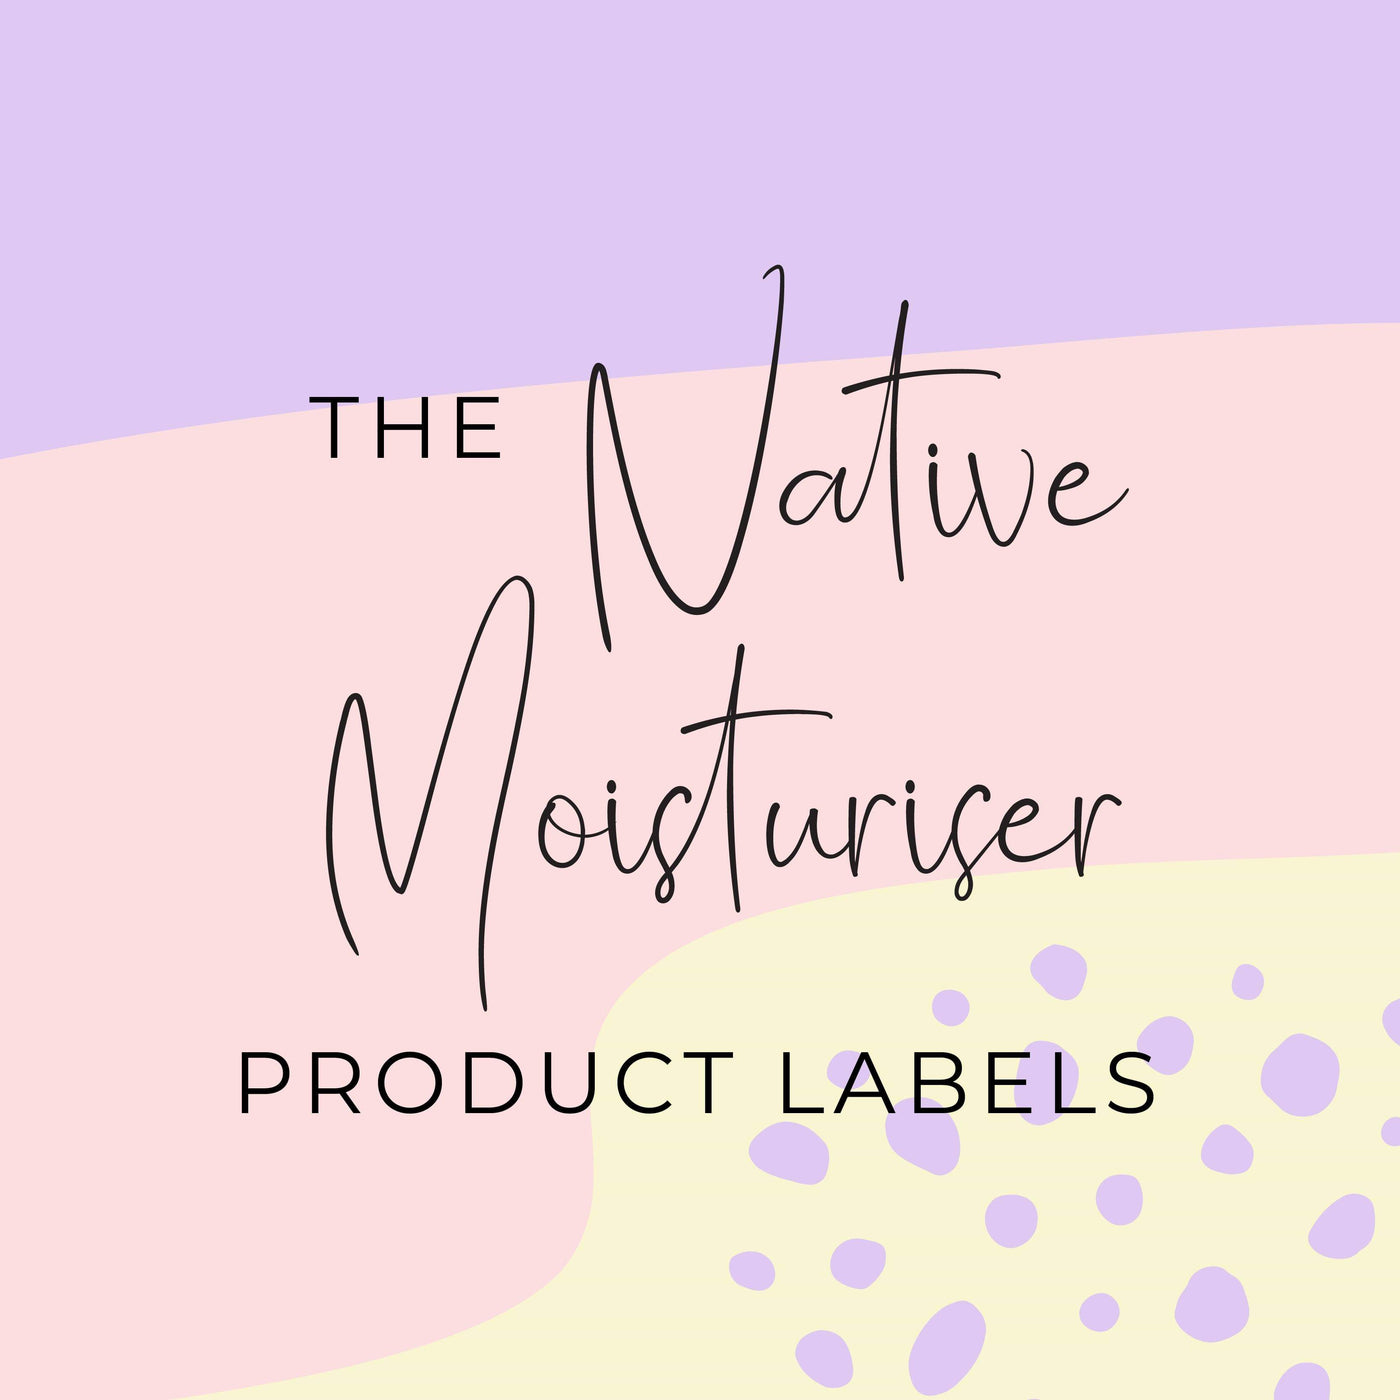 Native Moisturiser Product Labels (x 10 labels)